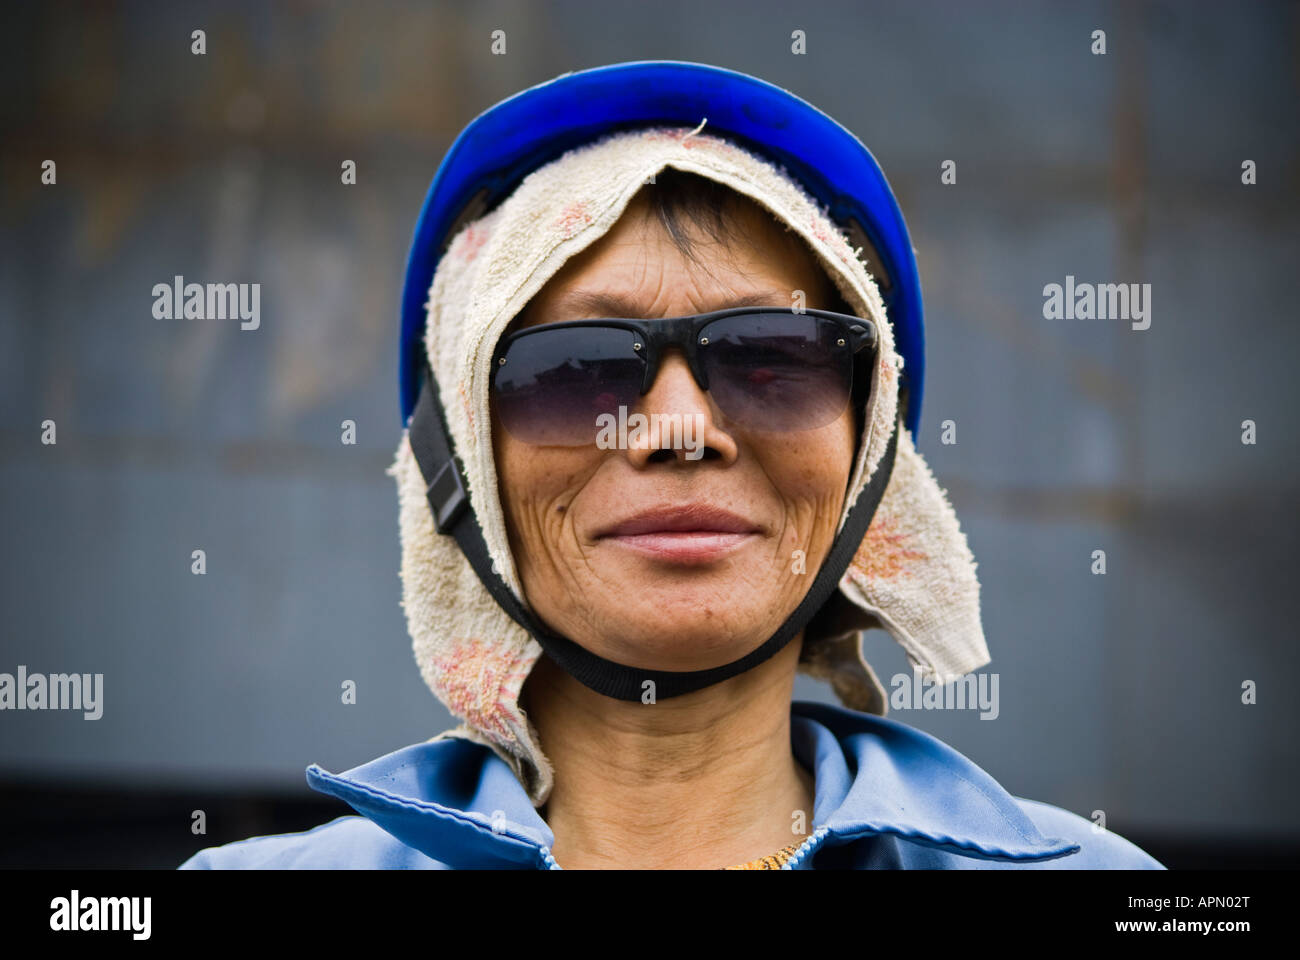 Woman welder, Aotai Ship Manufacturing Company, Yueqing, Zhejiang Province, China Stock Photo